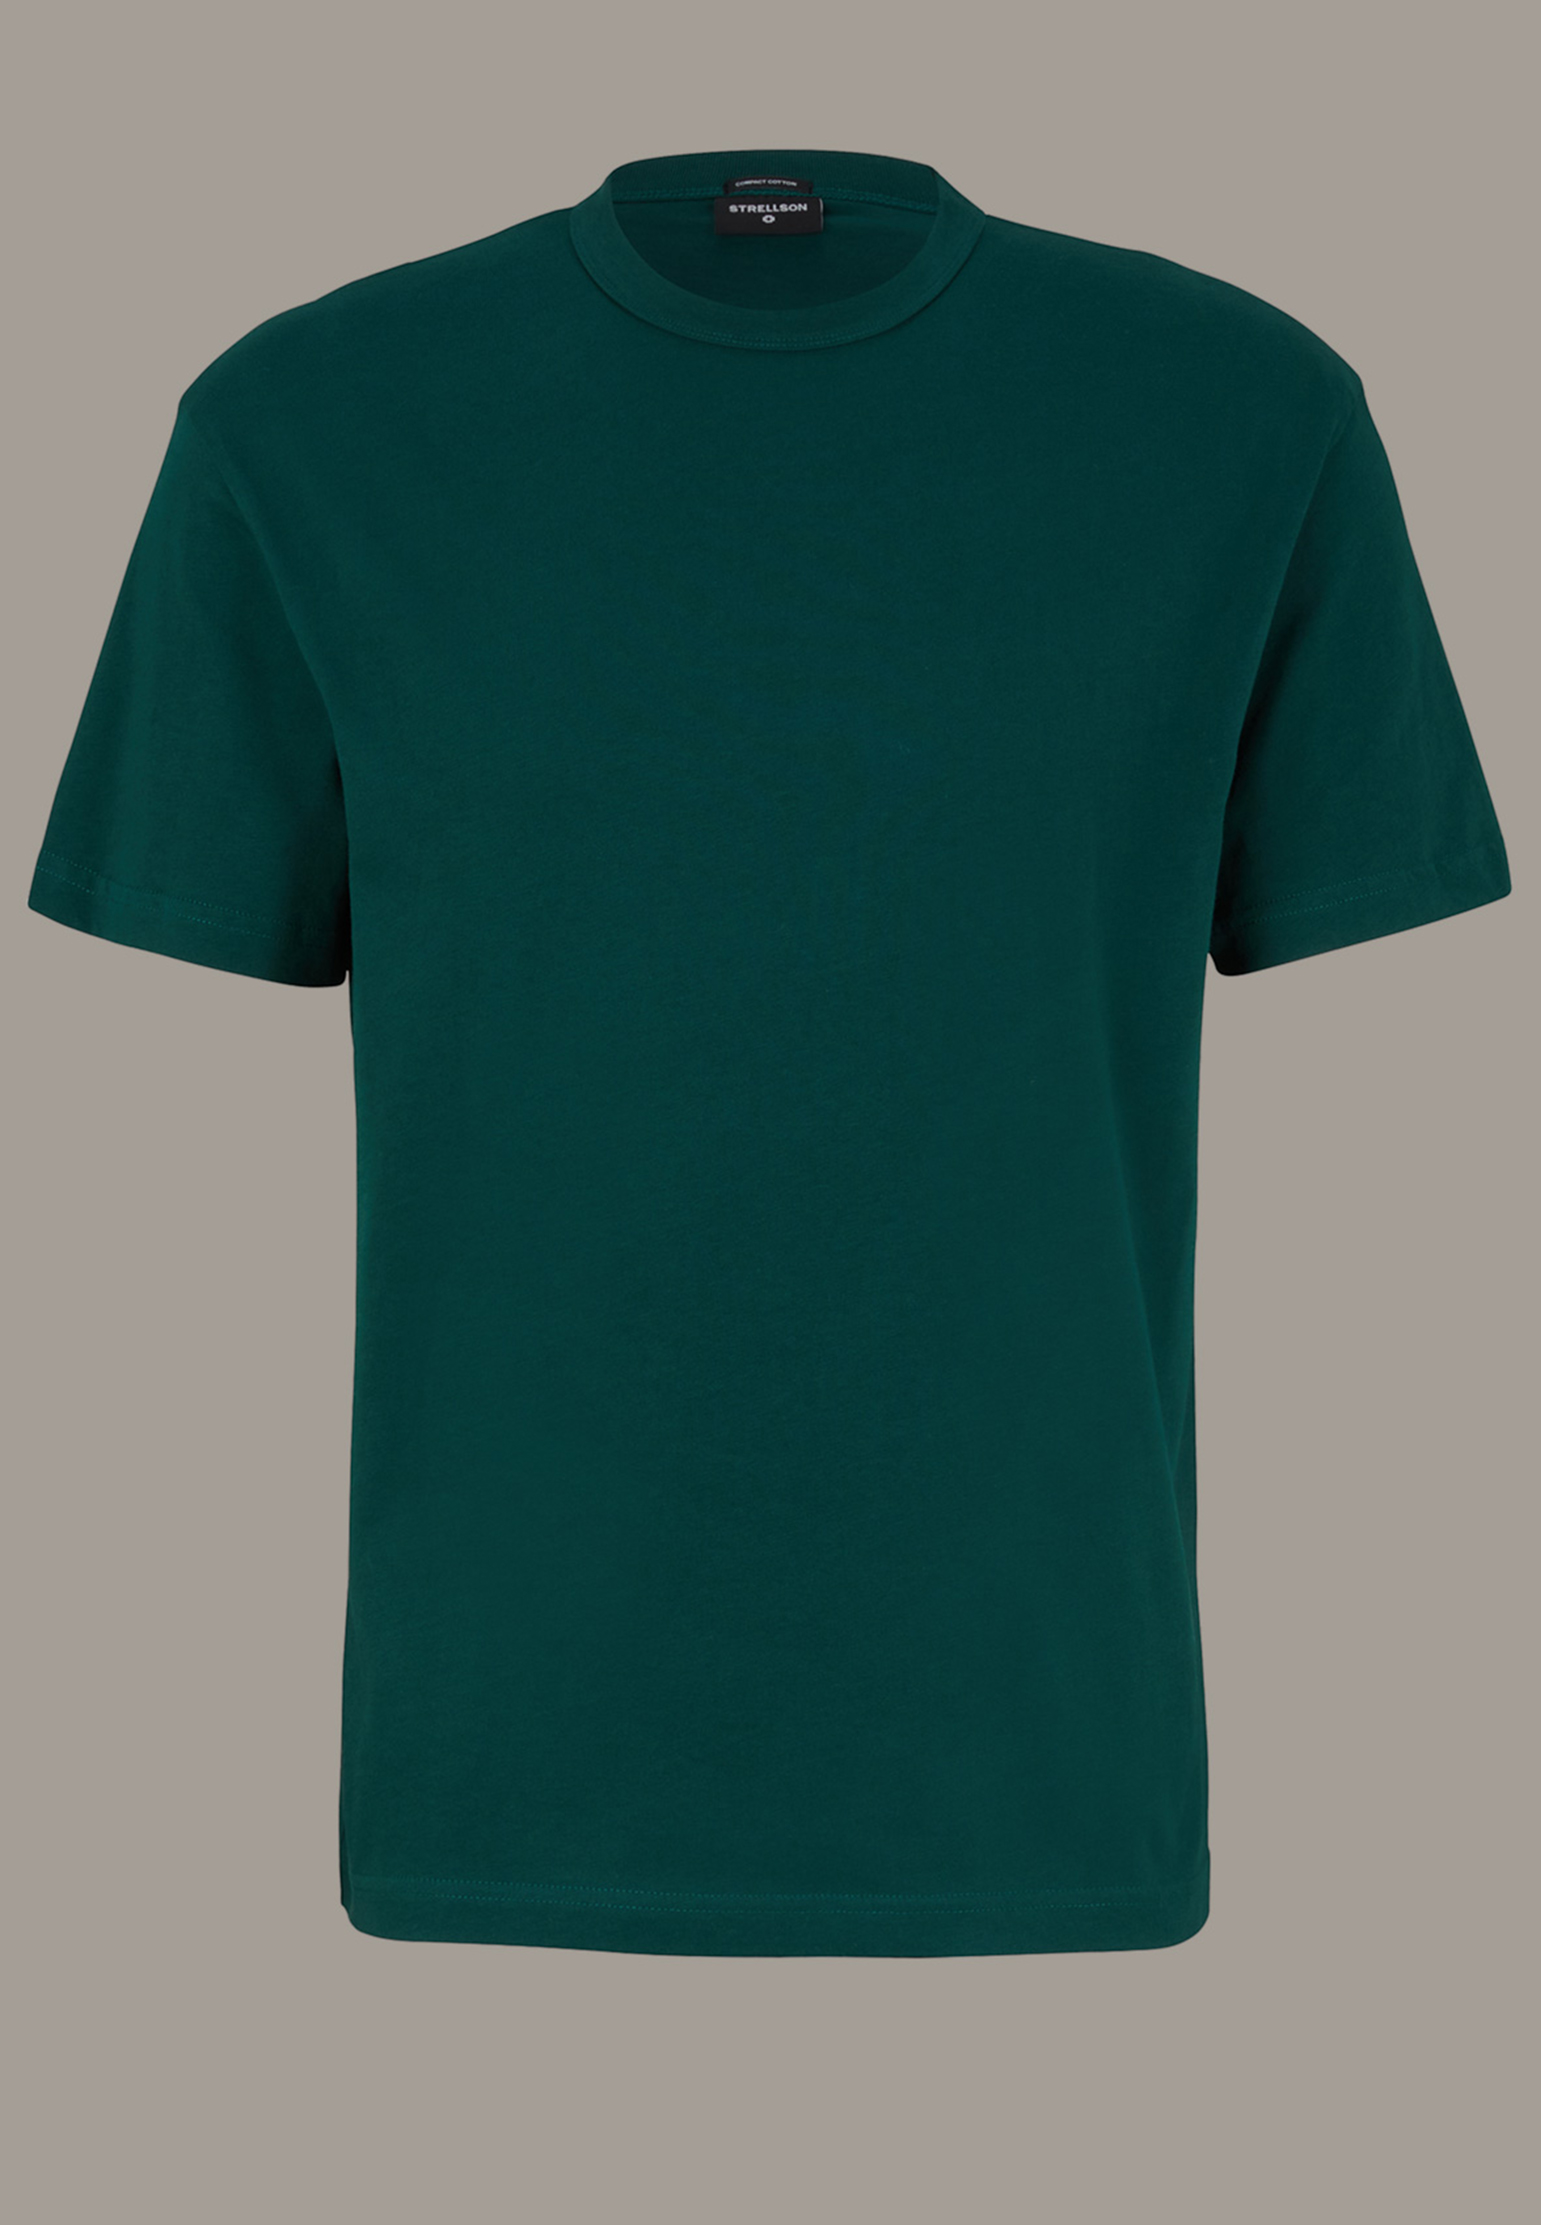 мужская футболка strellson, зеленая